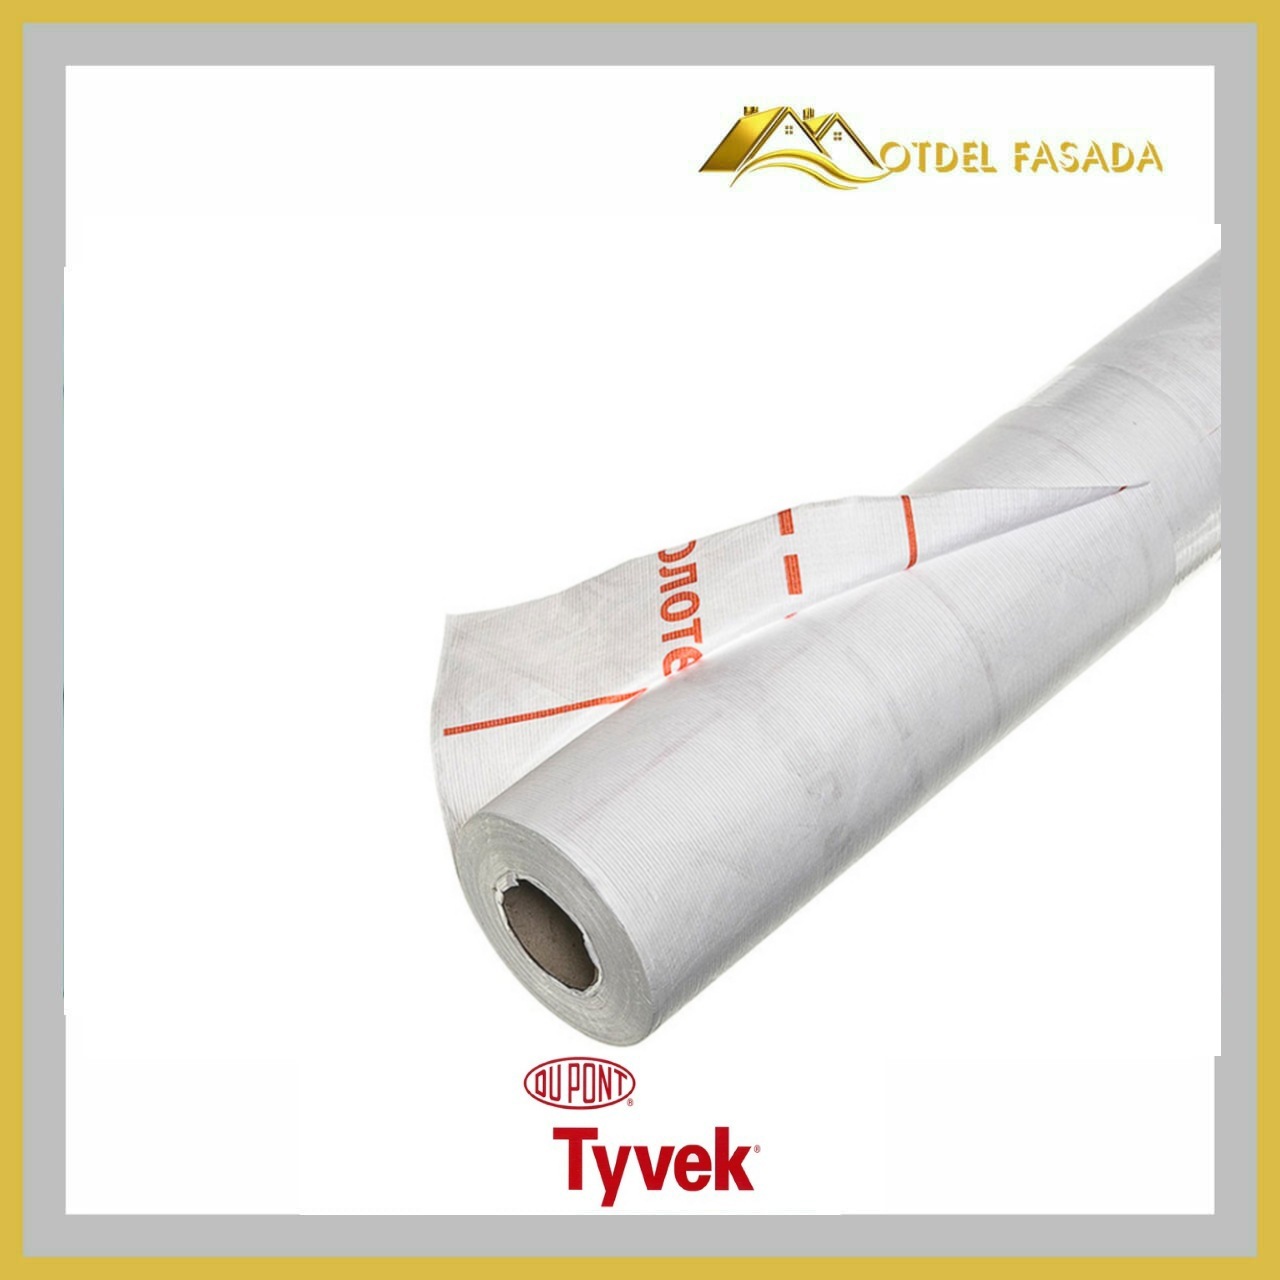 Купить пароизоляцию для стен. Ветро- влагозащита для кровли/стен Tyvek Solid 82 75 кв м. Tyvek Housewrap ветро-гидрозащитная мембрана 75м2. Мембрана гидроизоляционная ветрозащитная FASBOND (1.6Х43.75М). Ветро-влагозащита Tyvek Solid 75м².